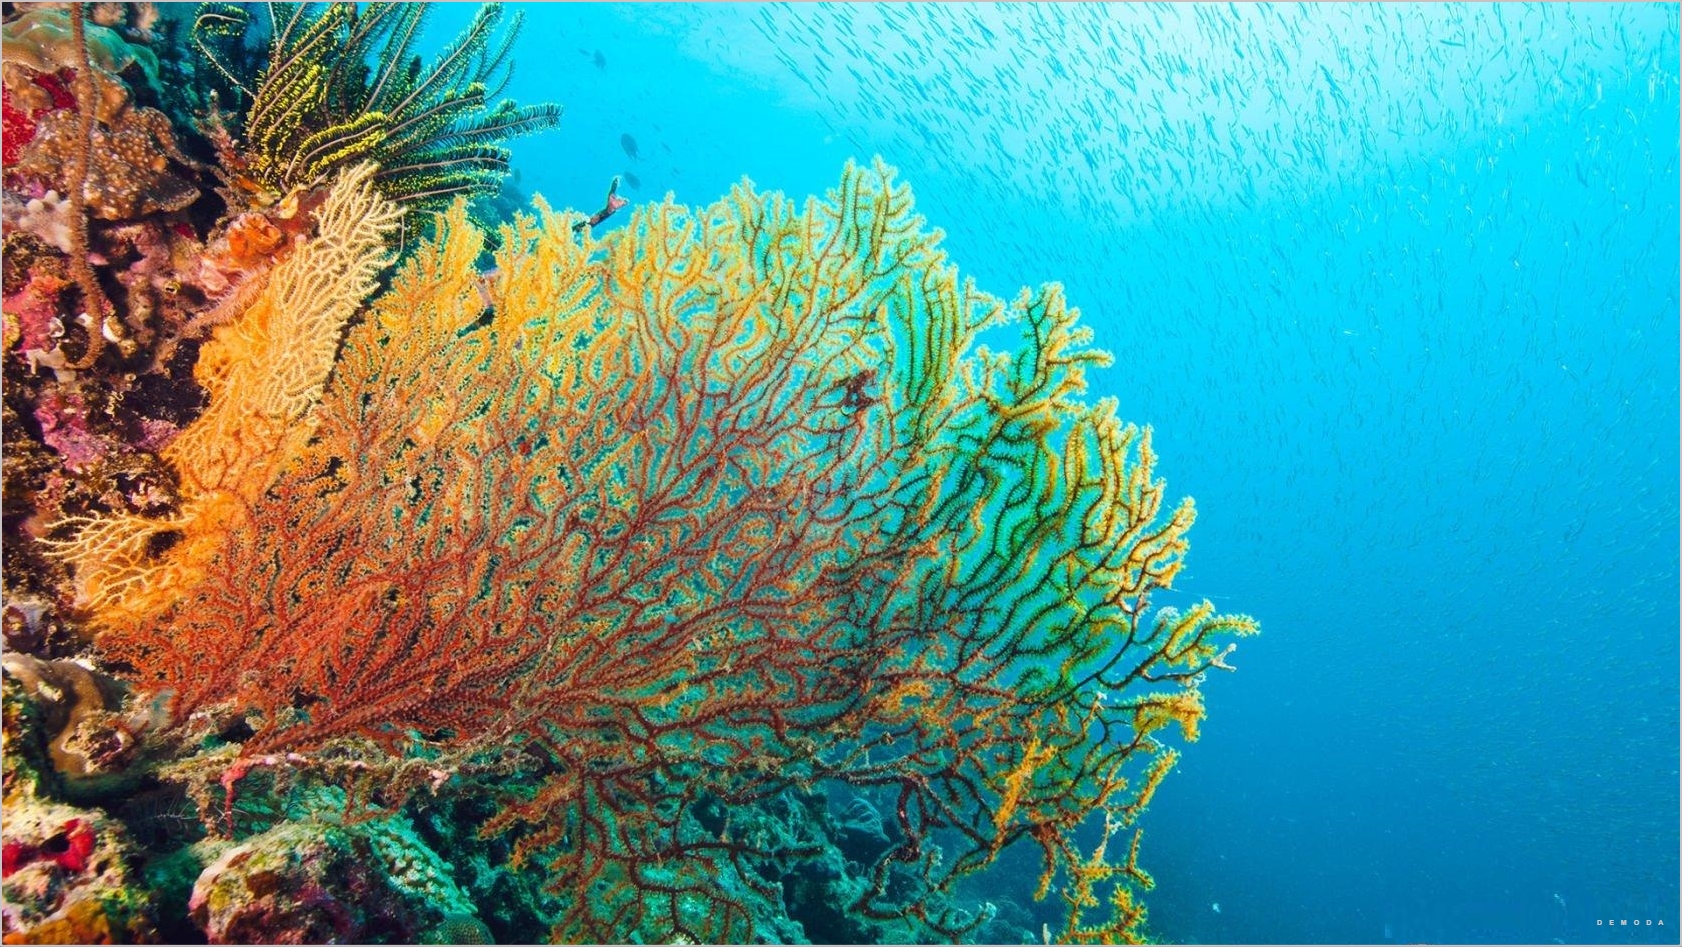 Ảnh san hô dưới biển: Hình ảnh san hô dưới biển với những gam màu tuyệt đẹp, những con cá đầy màu sắc và những khu rừng san hô kỳ diệu chắc chắn sẽ khiến bạn say đắm. Hãy thư giãn và cùng chiêm ngưỡng những khung hình đẹp nhất về rạn san hô.